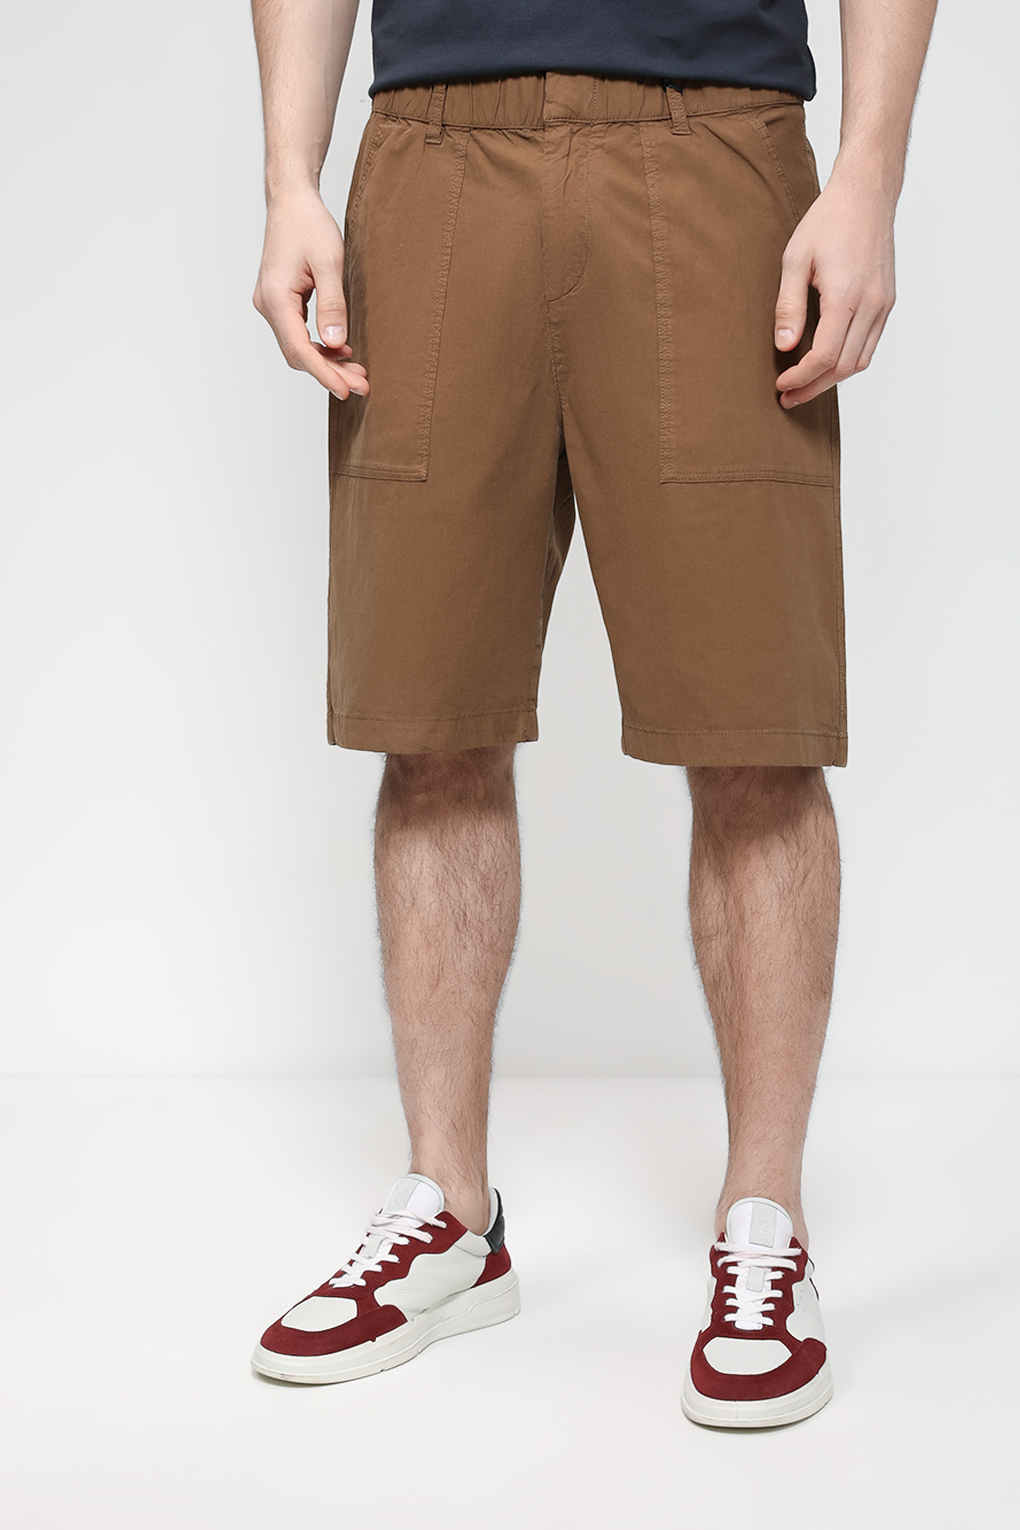 Повседневные шорты мужские Marc O’Polo 323121615054 коричневые 34